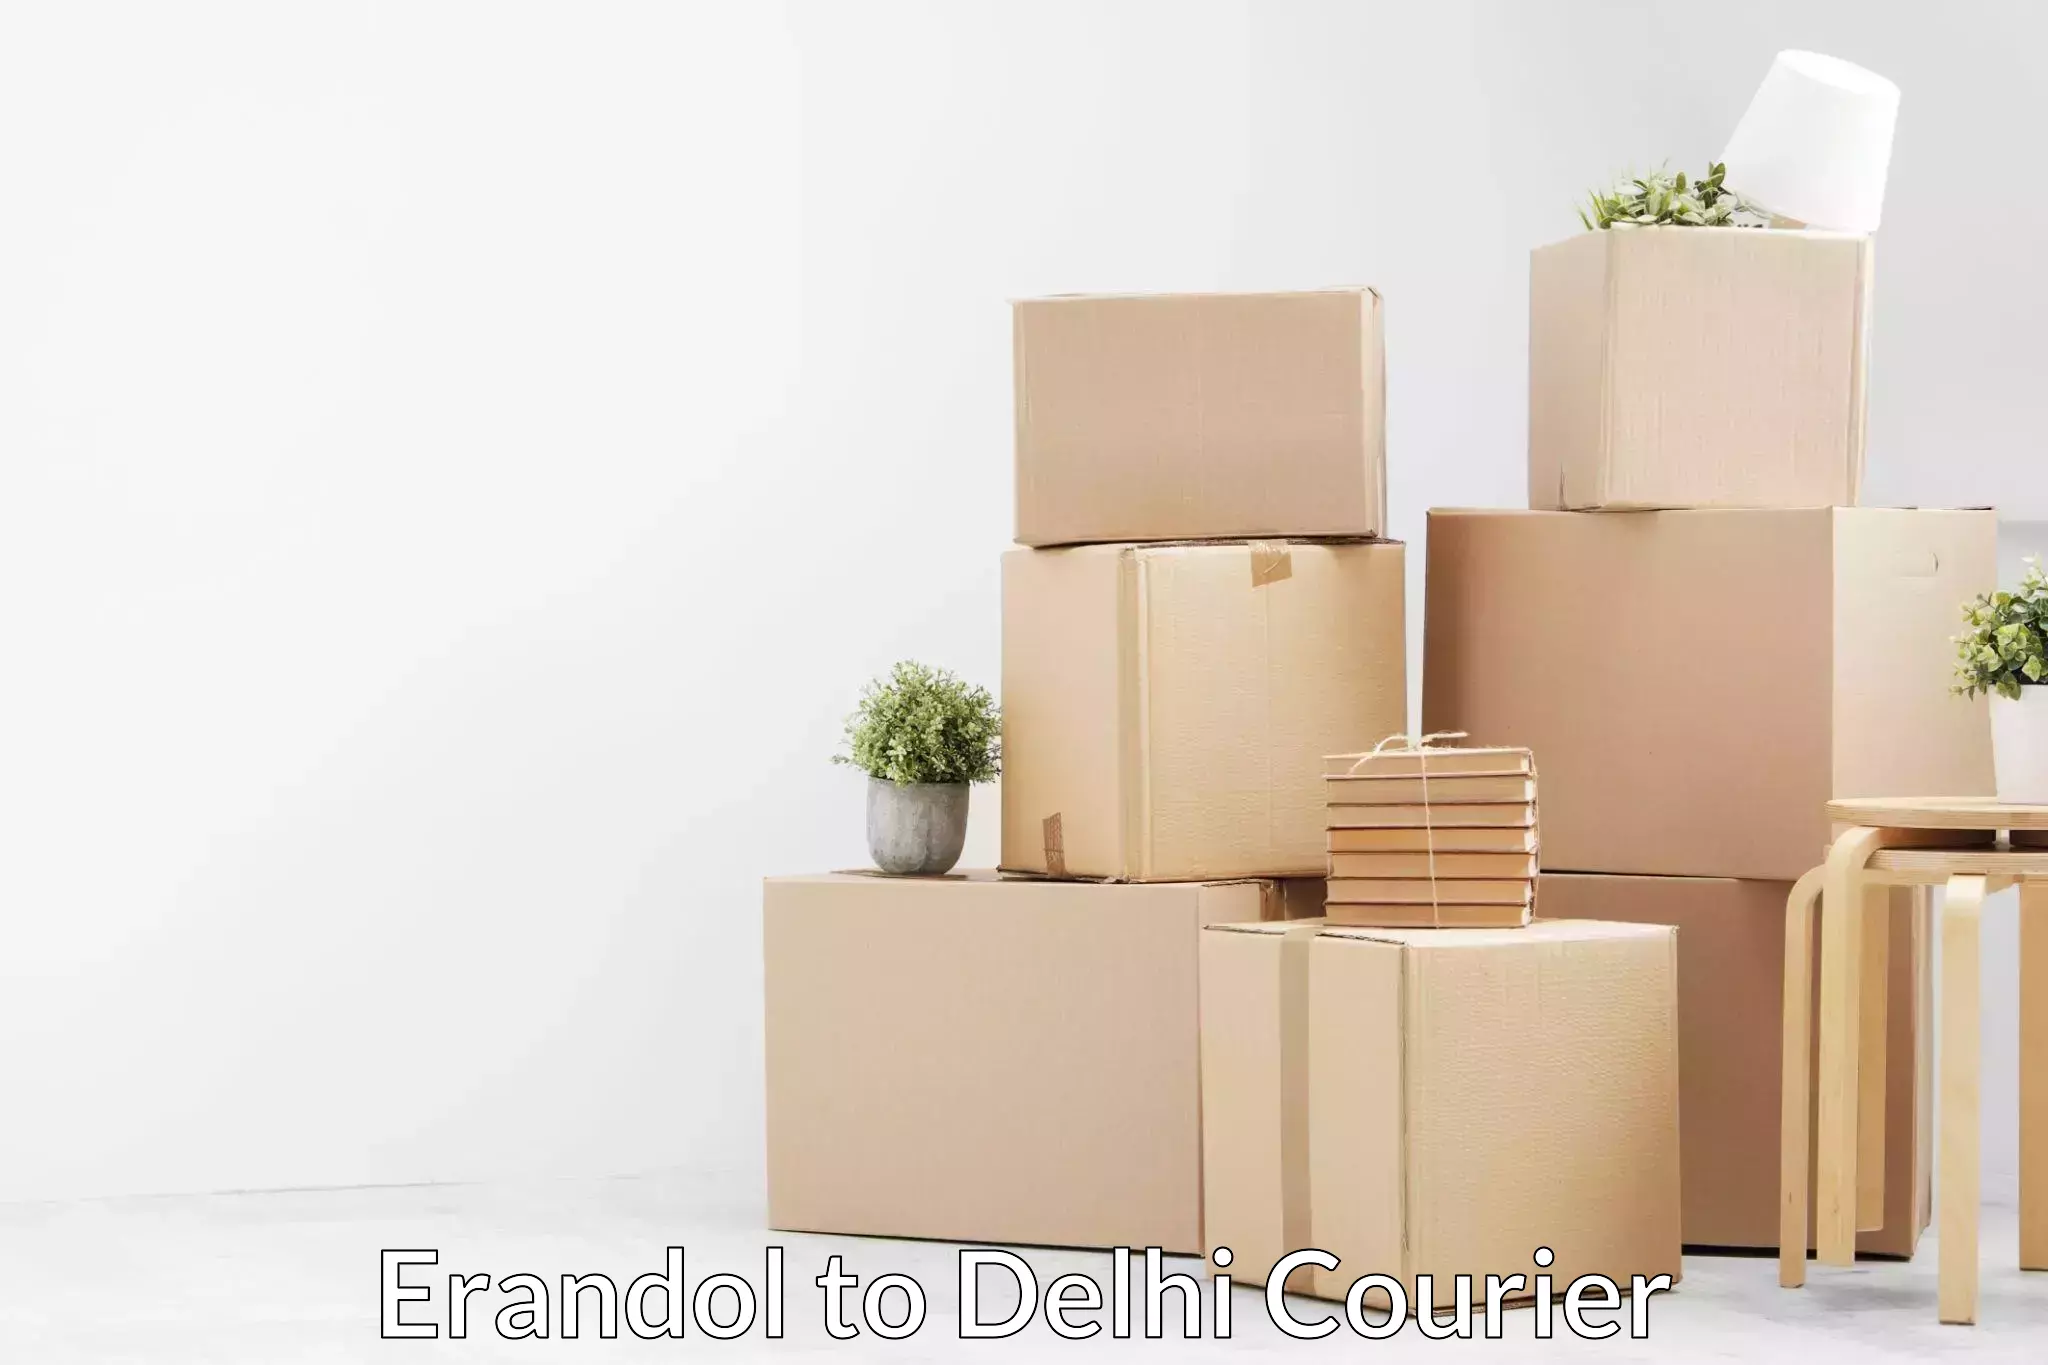 Customized moving solutions Erandol to Sarojini Nagar